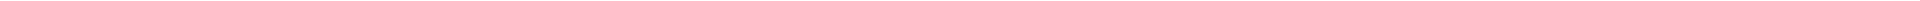 Элайнеры - цены на капы для выравнивания (исправления) прикуса, цены в Астане, Алматы, Атырау, Усть-Каменогорск, Уральск, Кокшетау в Казахстане, фото 19